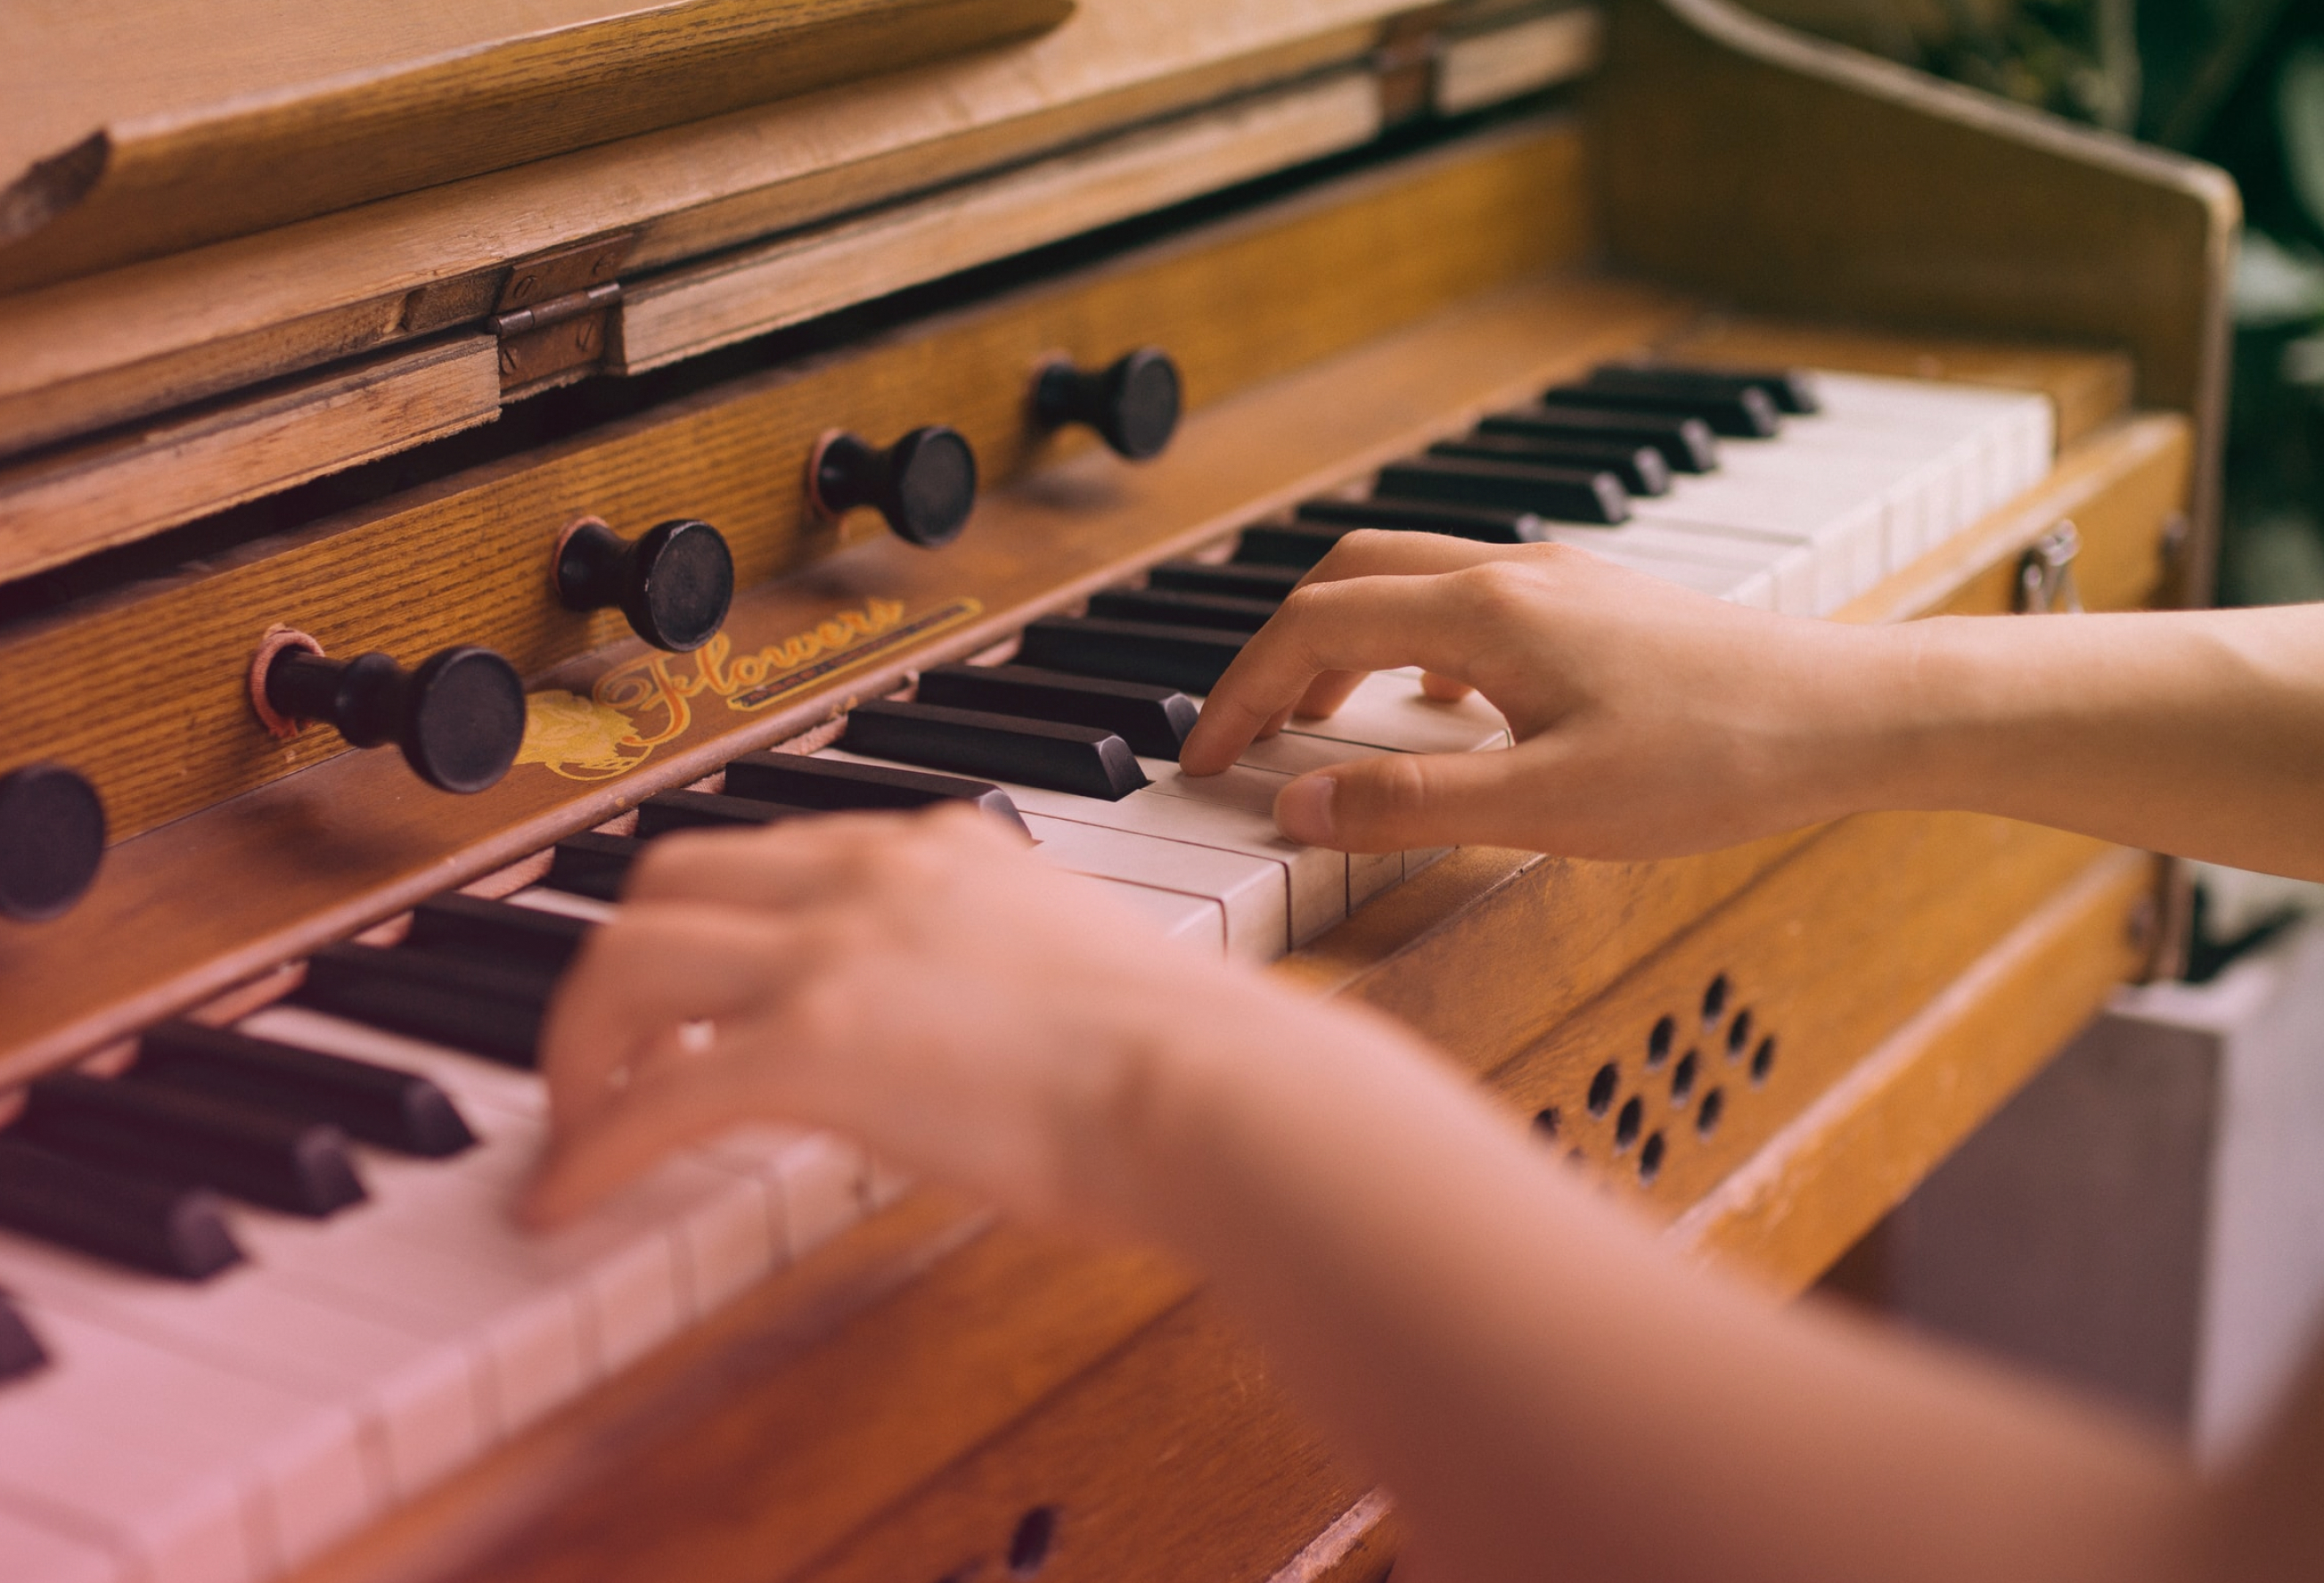 Apprendre le piano à 30 ans : il n'est jamais trop tard pour réaliser ses  rêves - Acapelart